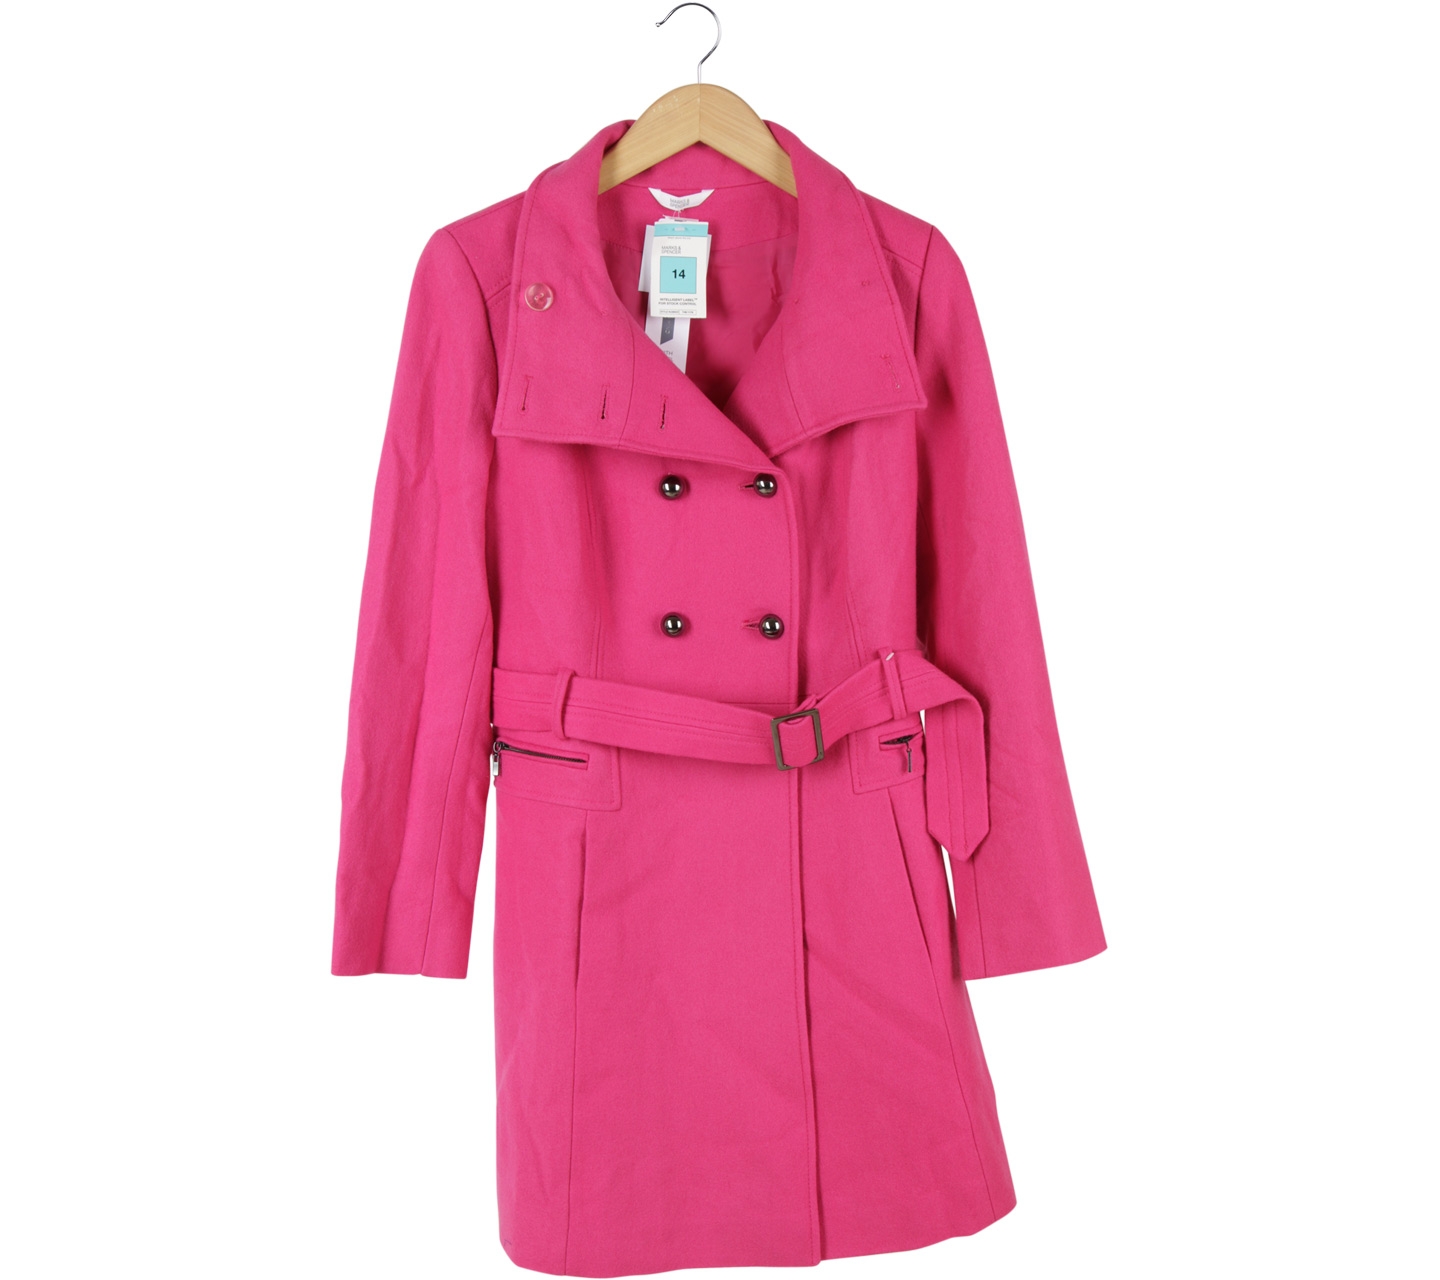 Marks & Spencer Pink Coat